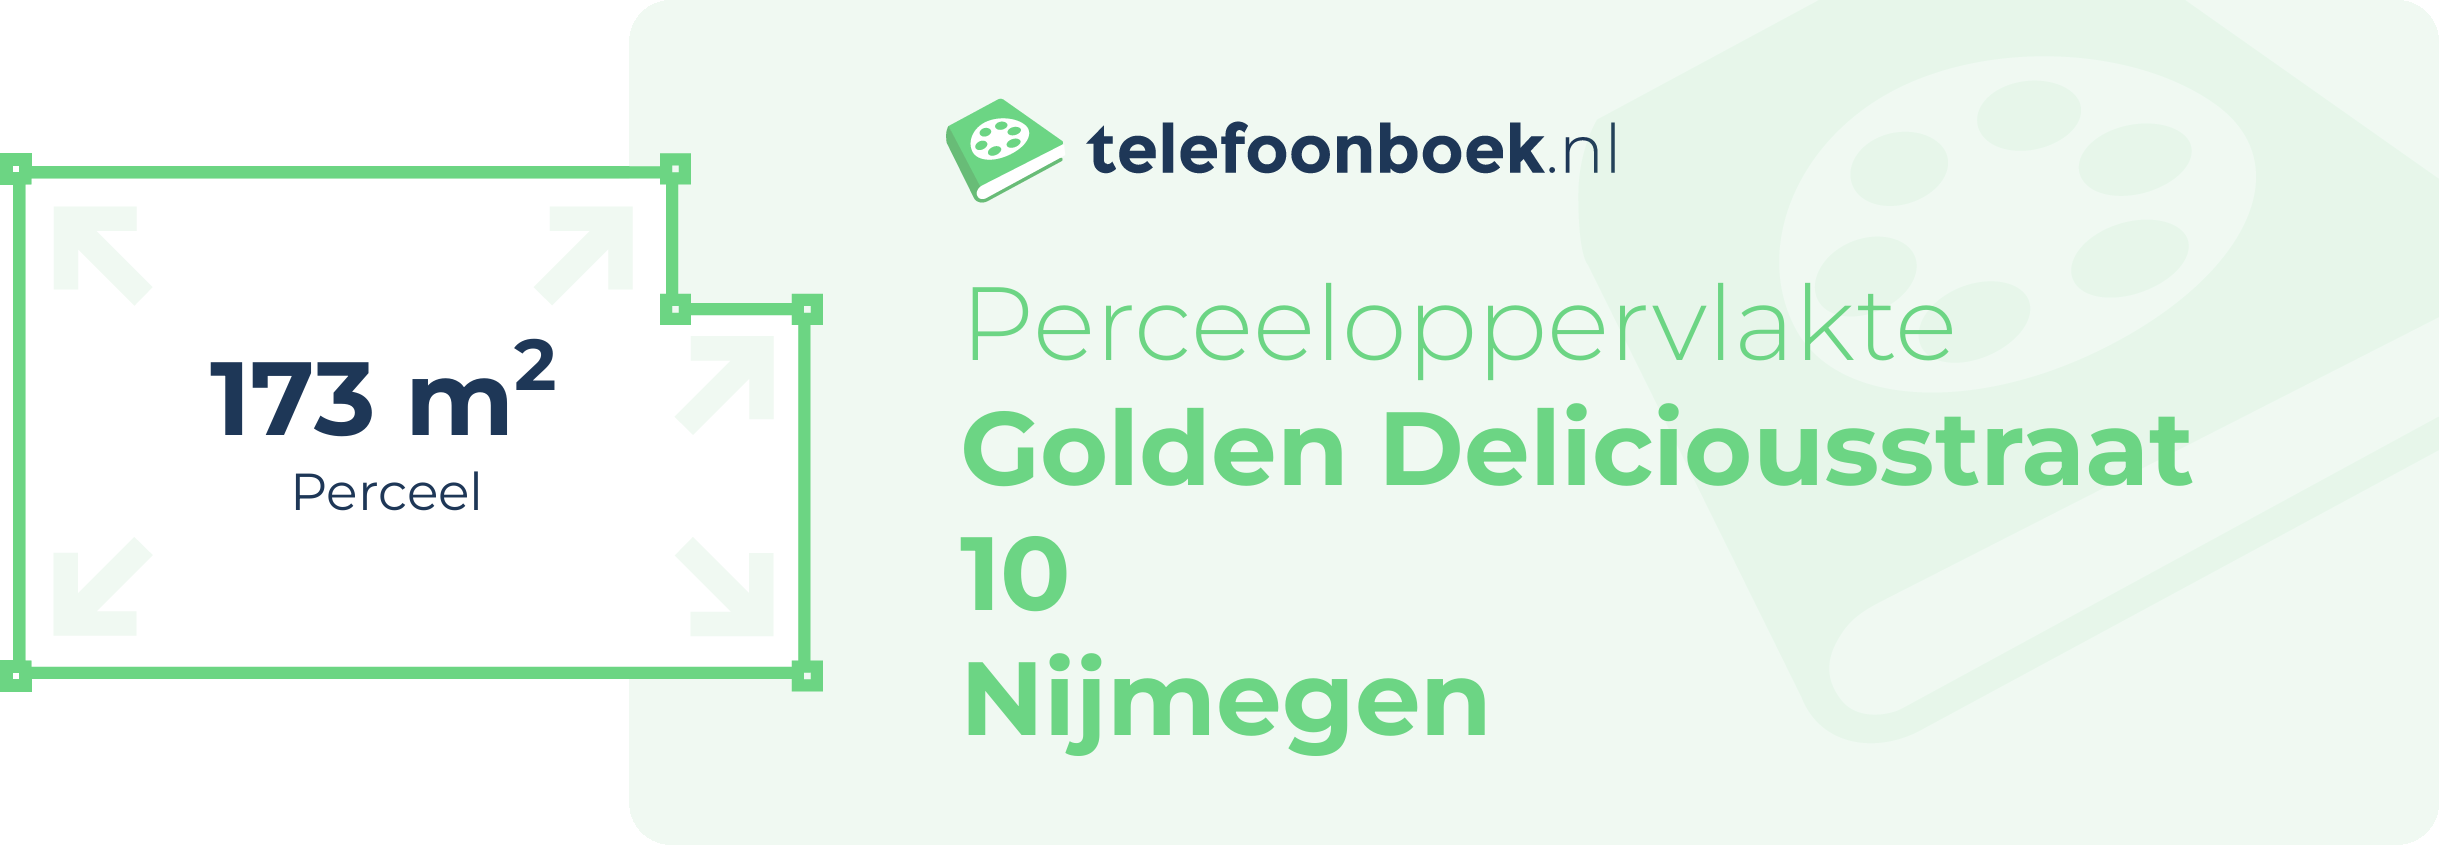 Perceeloppervlakte Golden Deliciousstraat 10 Nijmegen